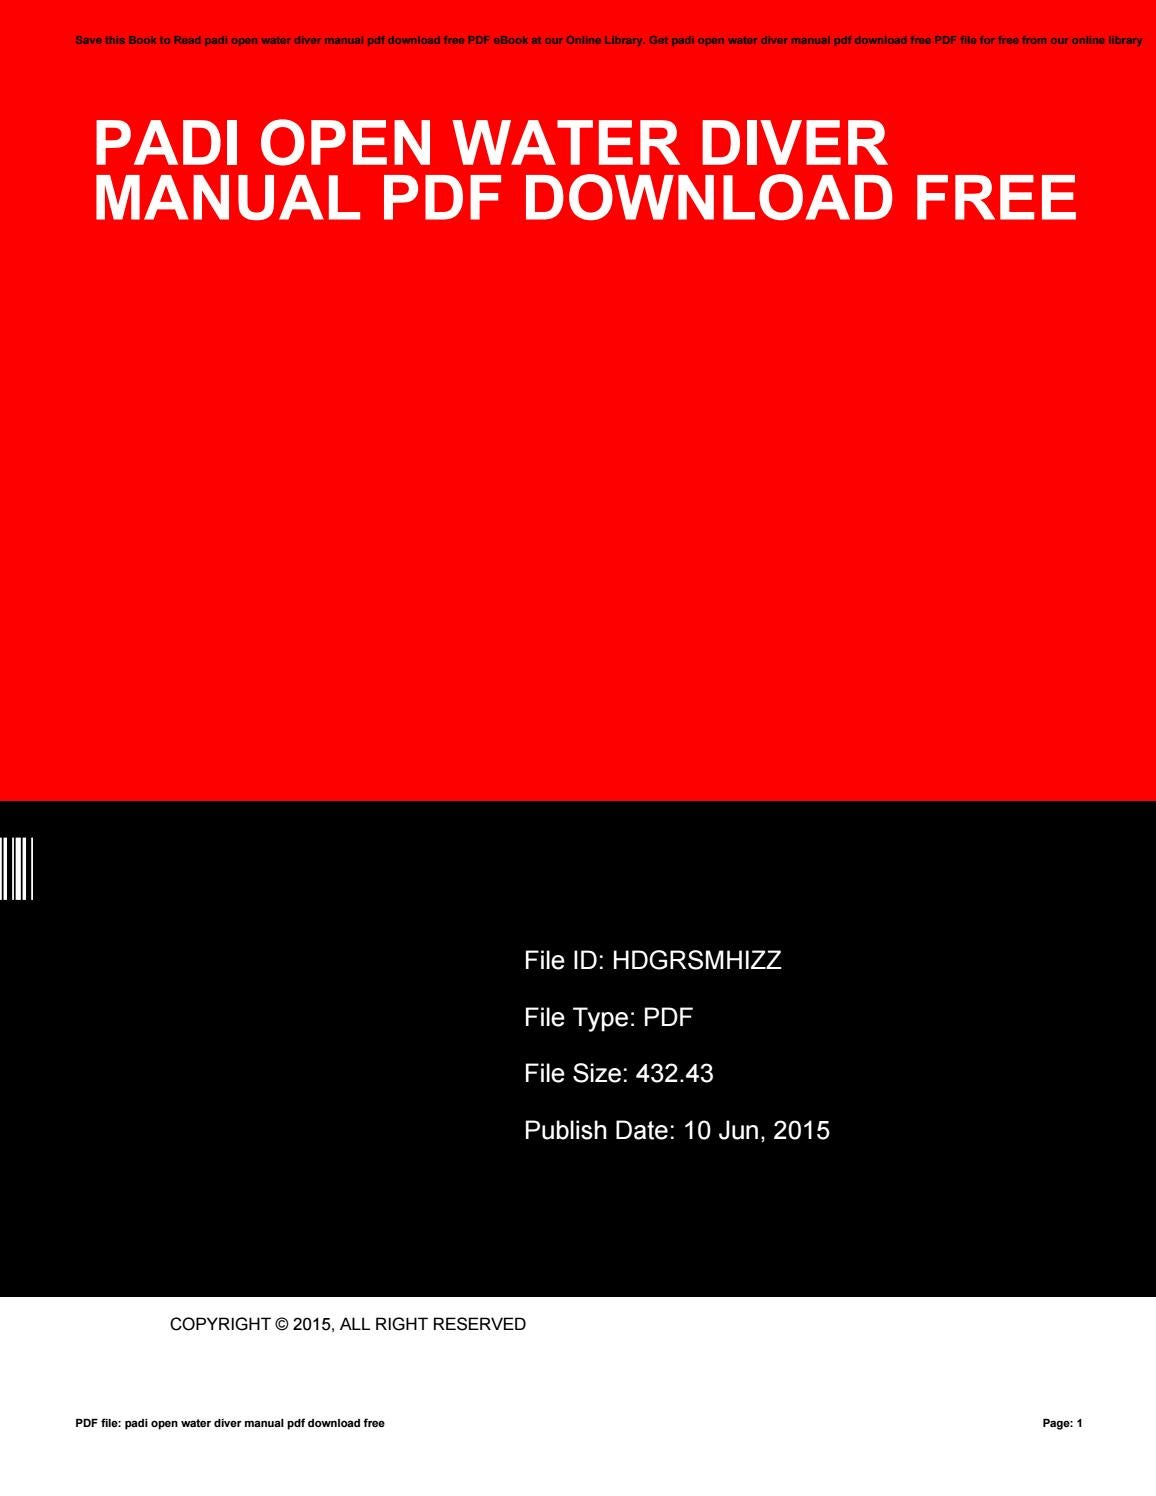 scuba diving manual free download